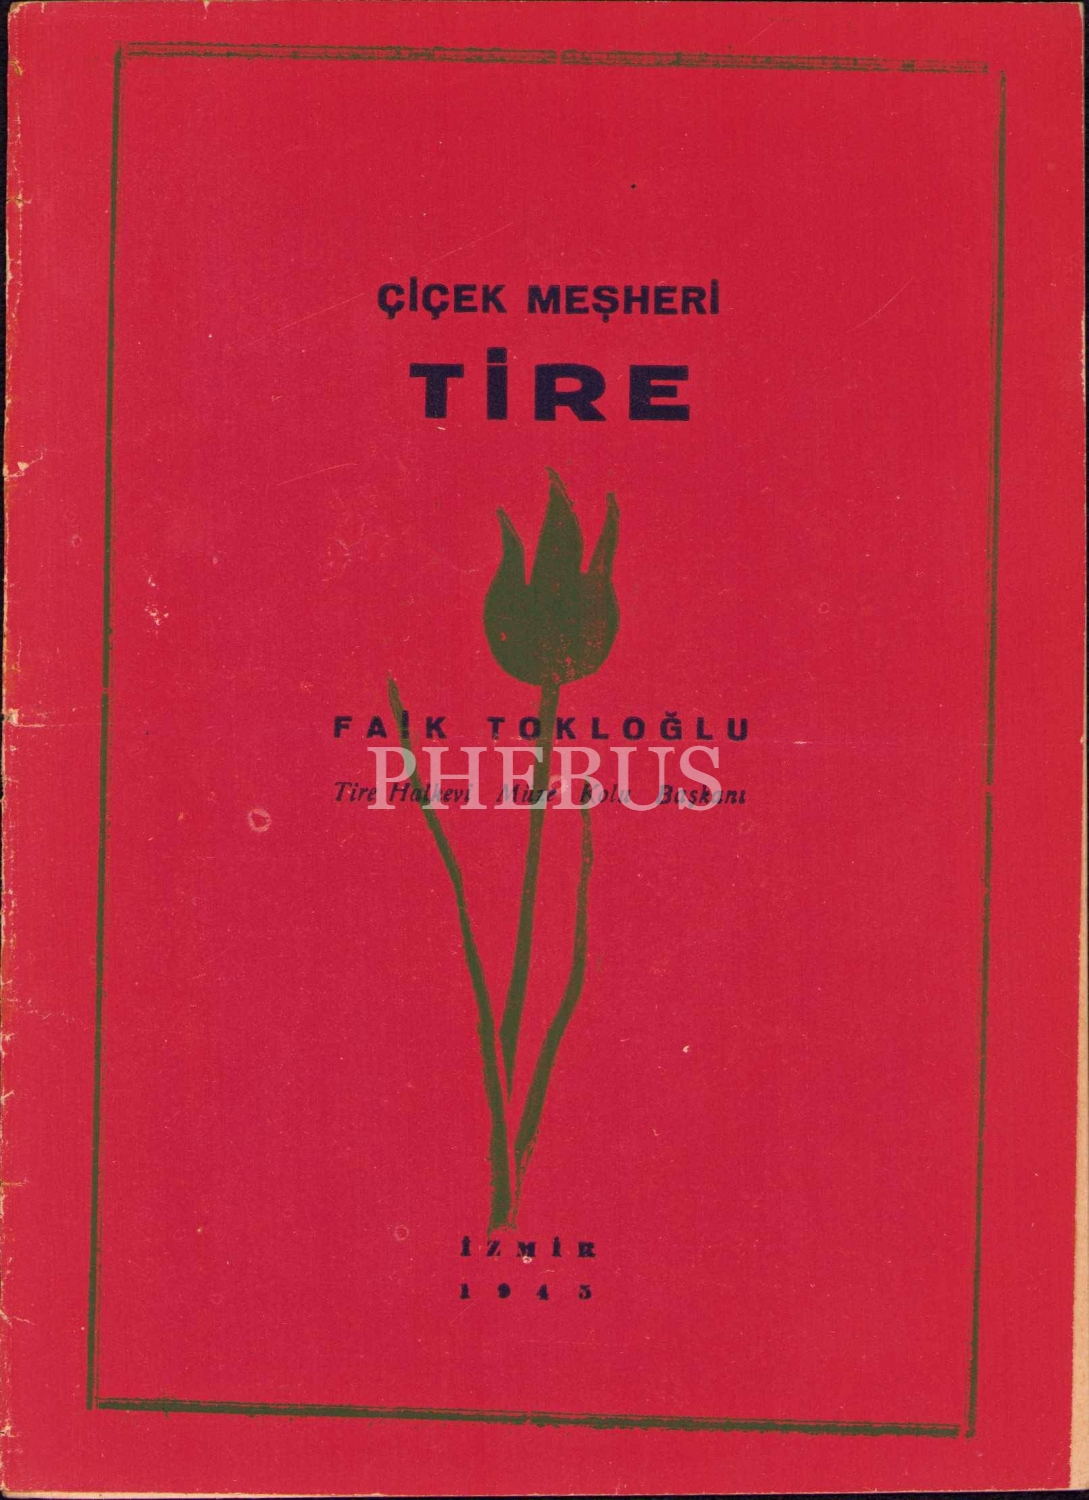 Çiçek Meşheri Tire, Tire Halkevi Müze Kolu Başkanı Fâik Tokloğlu, İzmir, 1945,14 sayfa, 14x19 cm